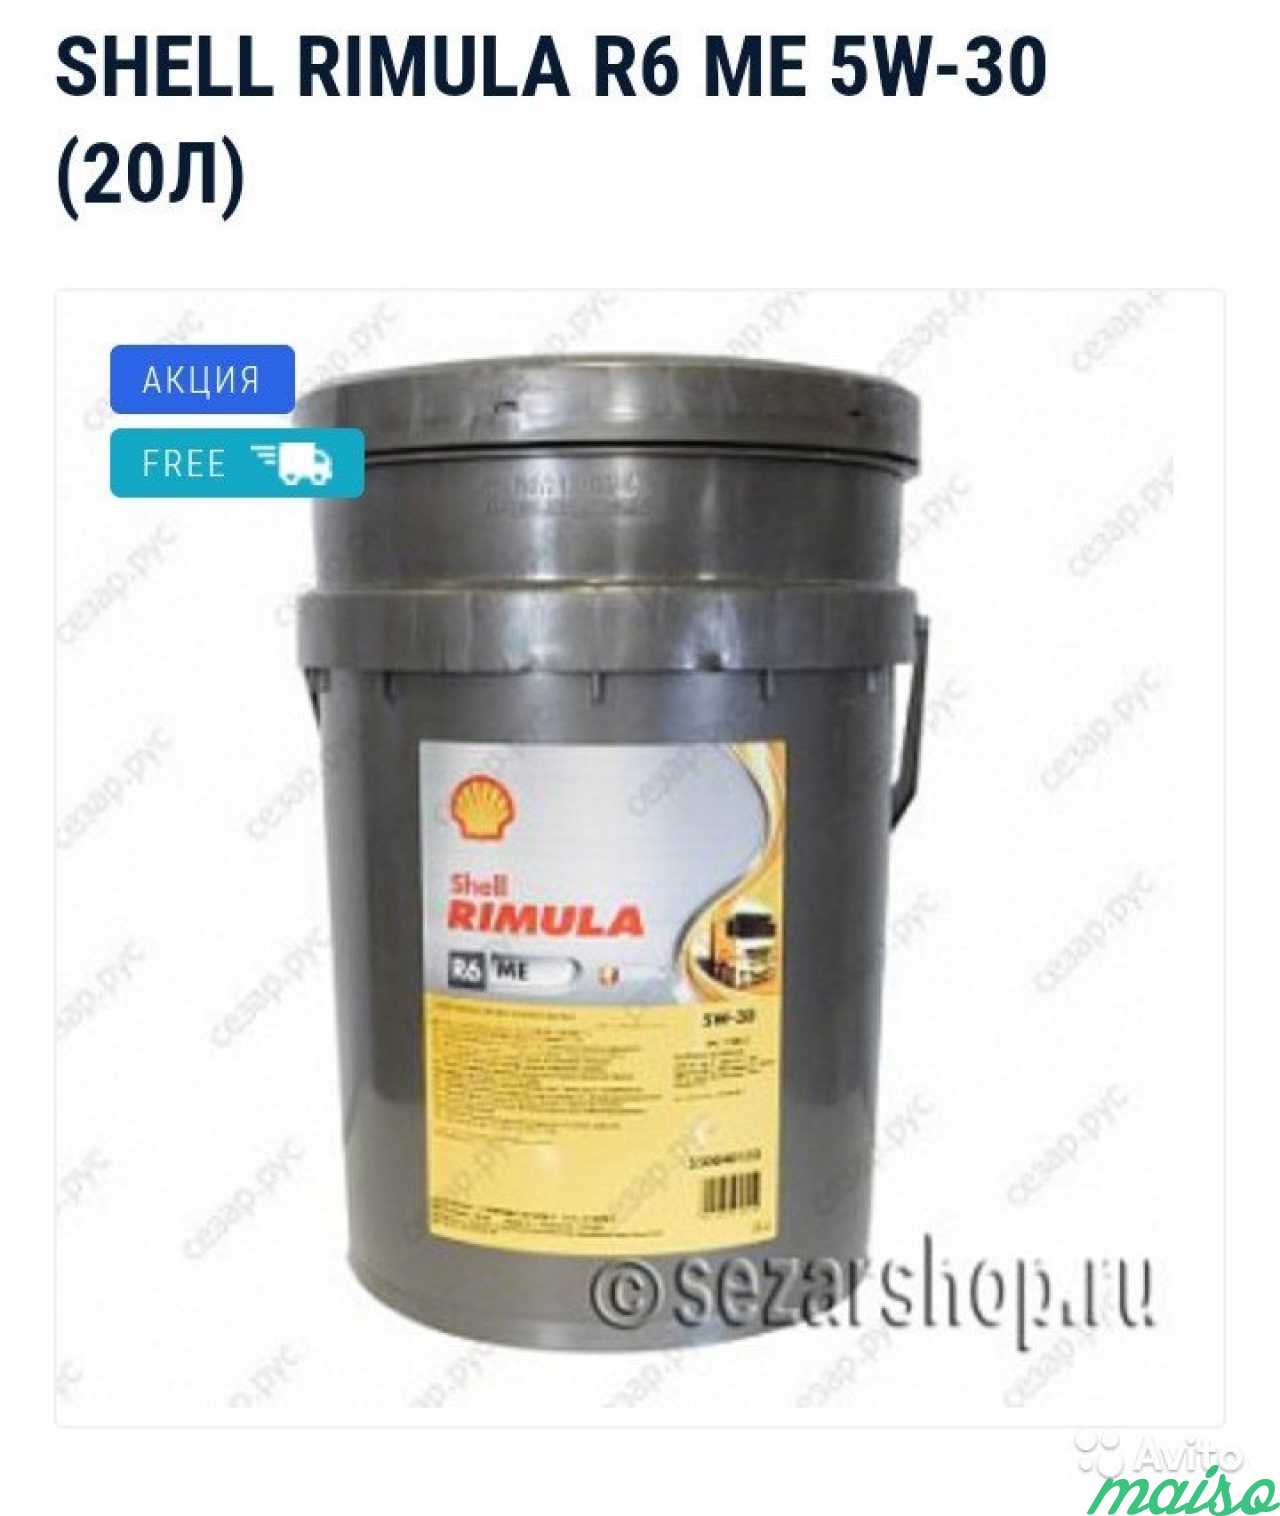 Shell rimula r6me 5w30 (20л.) в Санкт-Петербурге. Фото 1